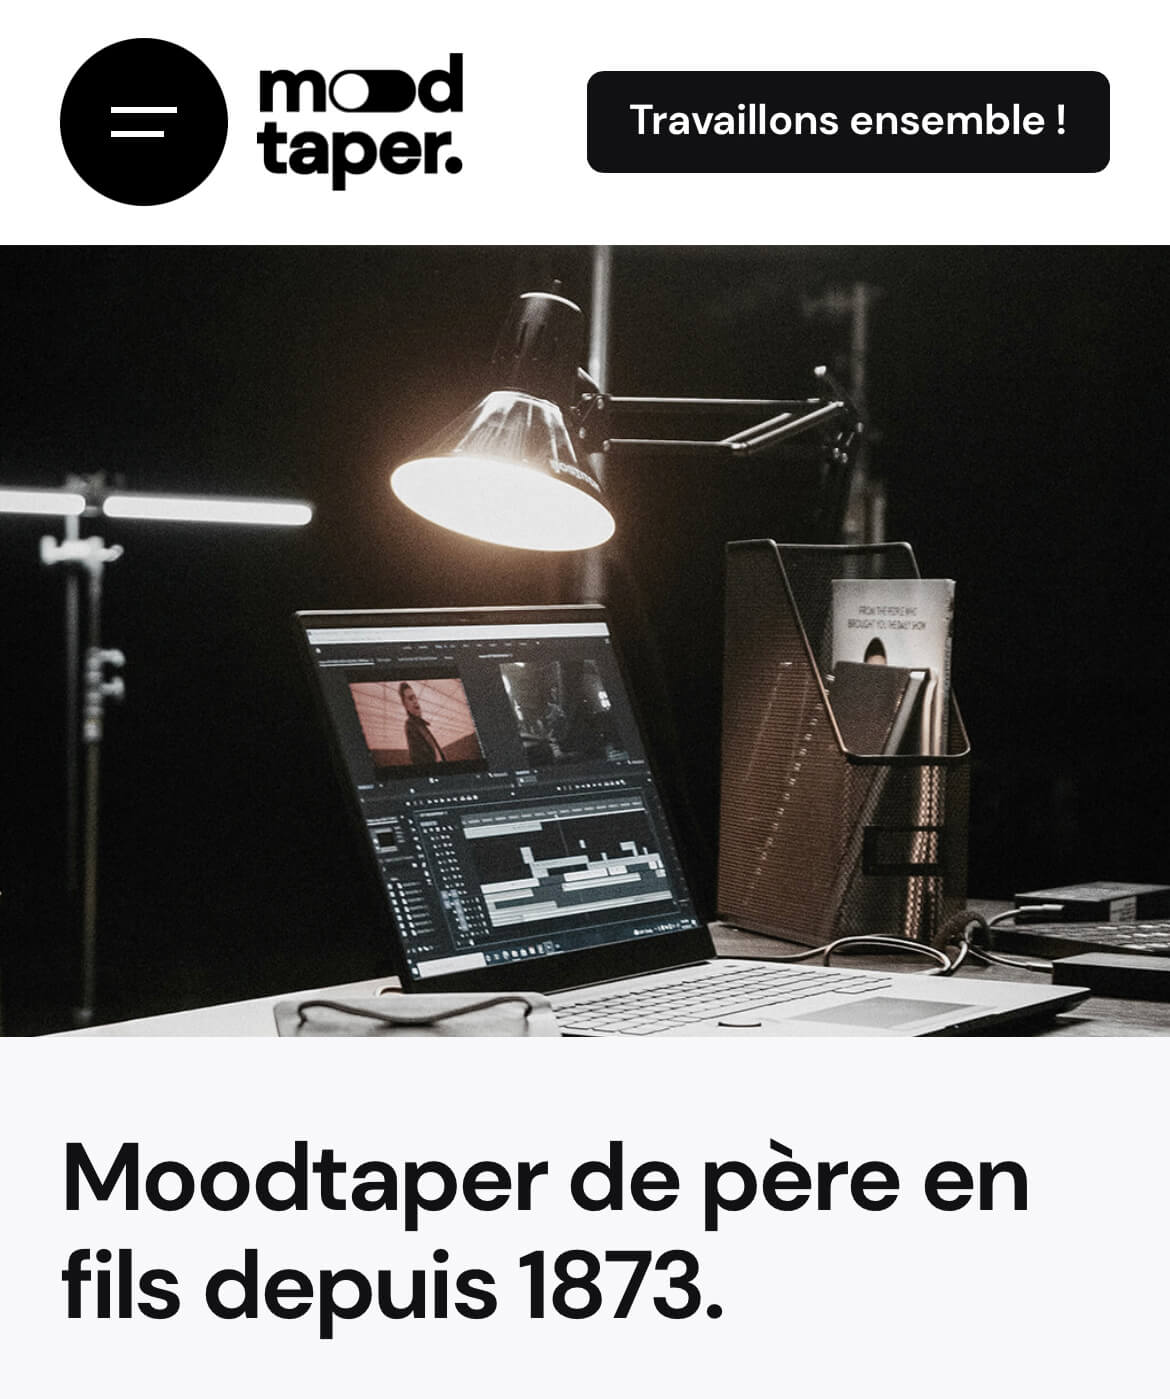 Moodtaper.fr : notre site dédié à la création de moodtape pour agence de communication